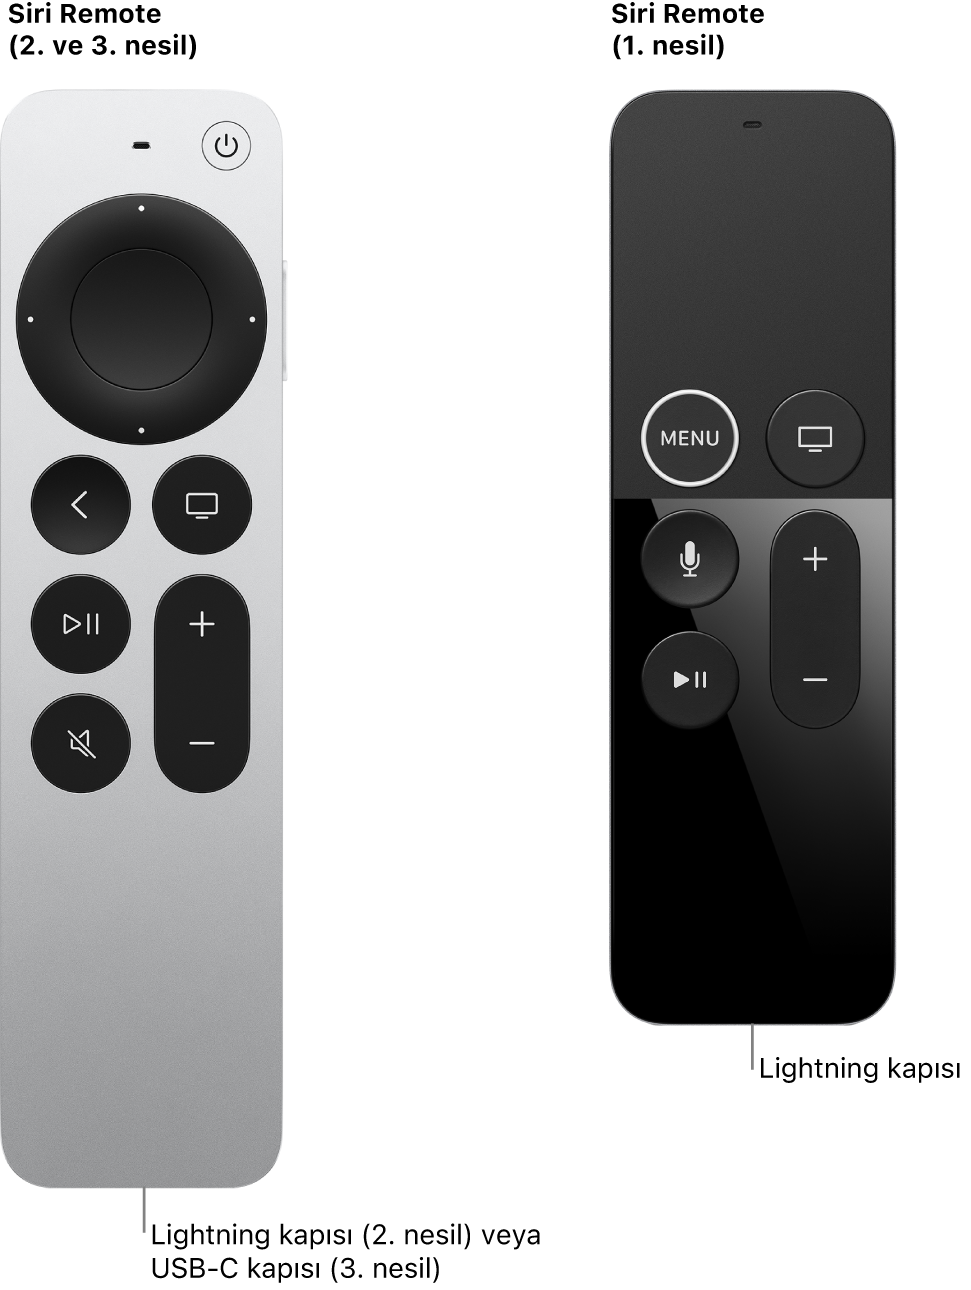 Siri Remote (2. ve 3. nesil) ve Siri Remote (1. nesil) modelinin bağlayıcı kapısını gösteren görüntü